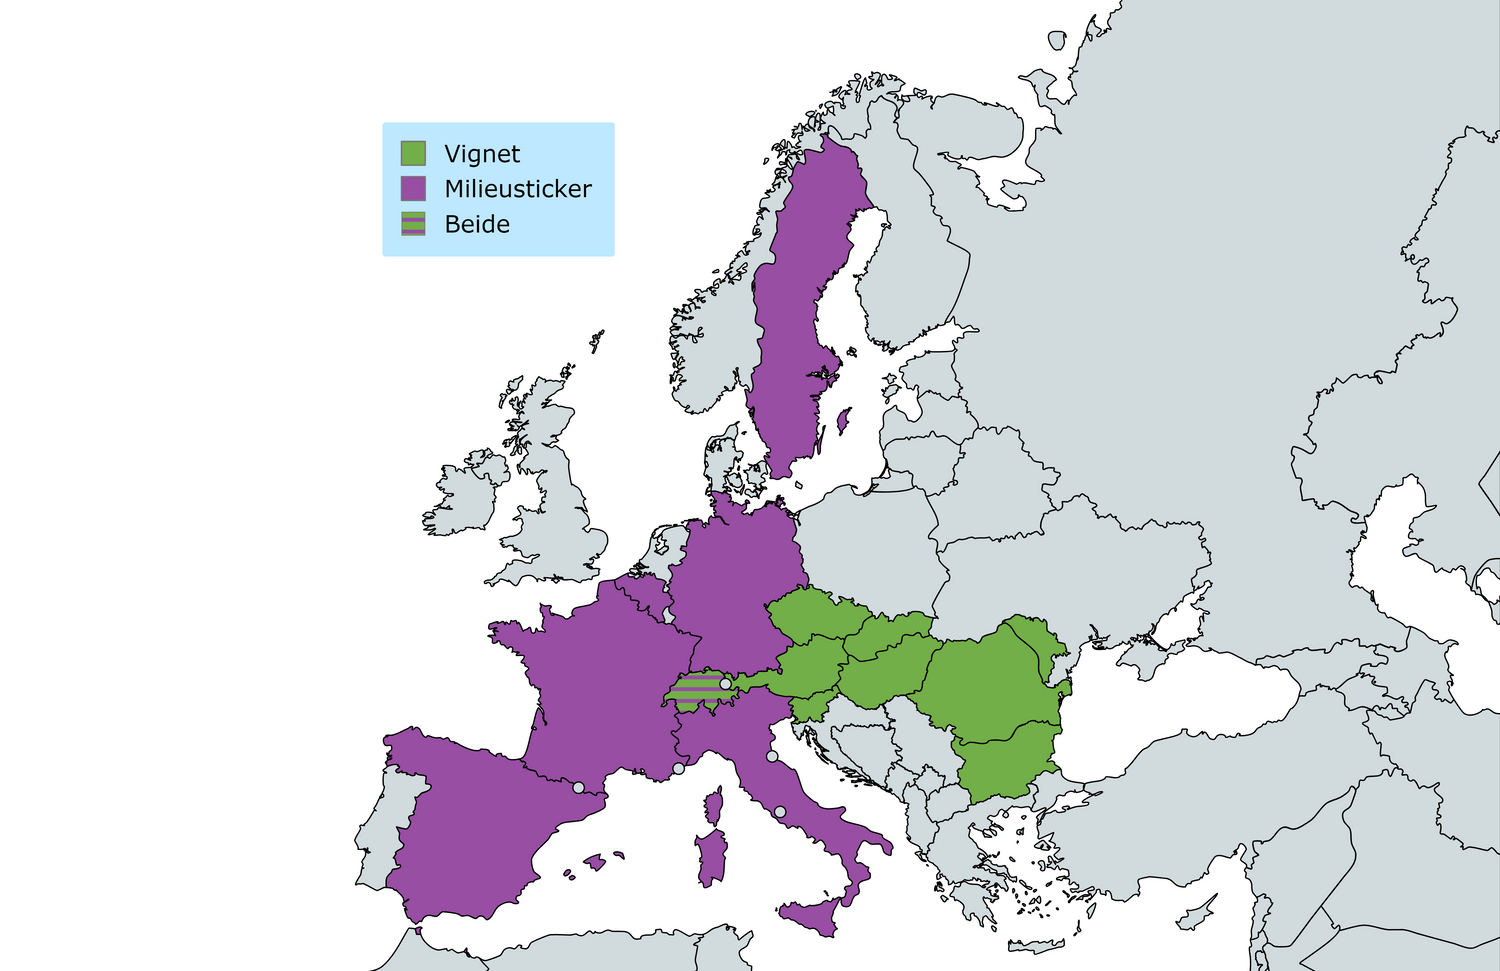 Kaart van Europa met landen die een vignet en milieusticker gebruiken